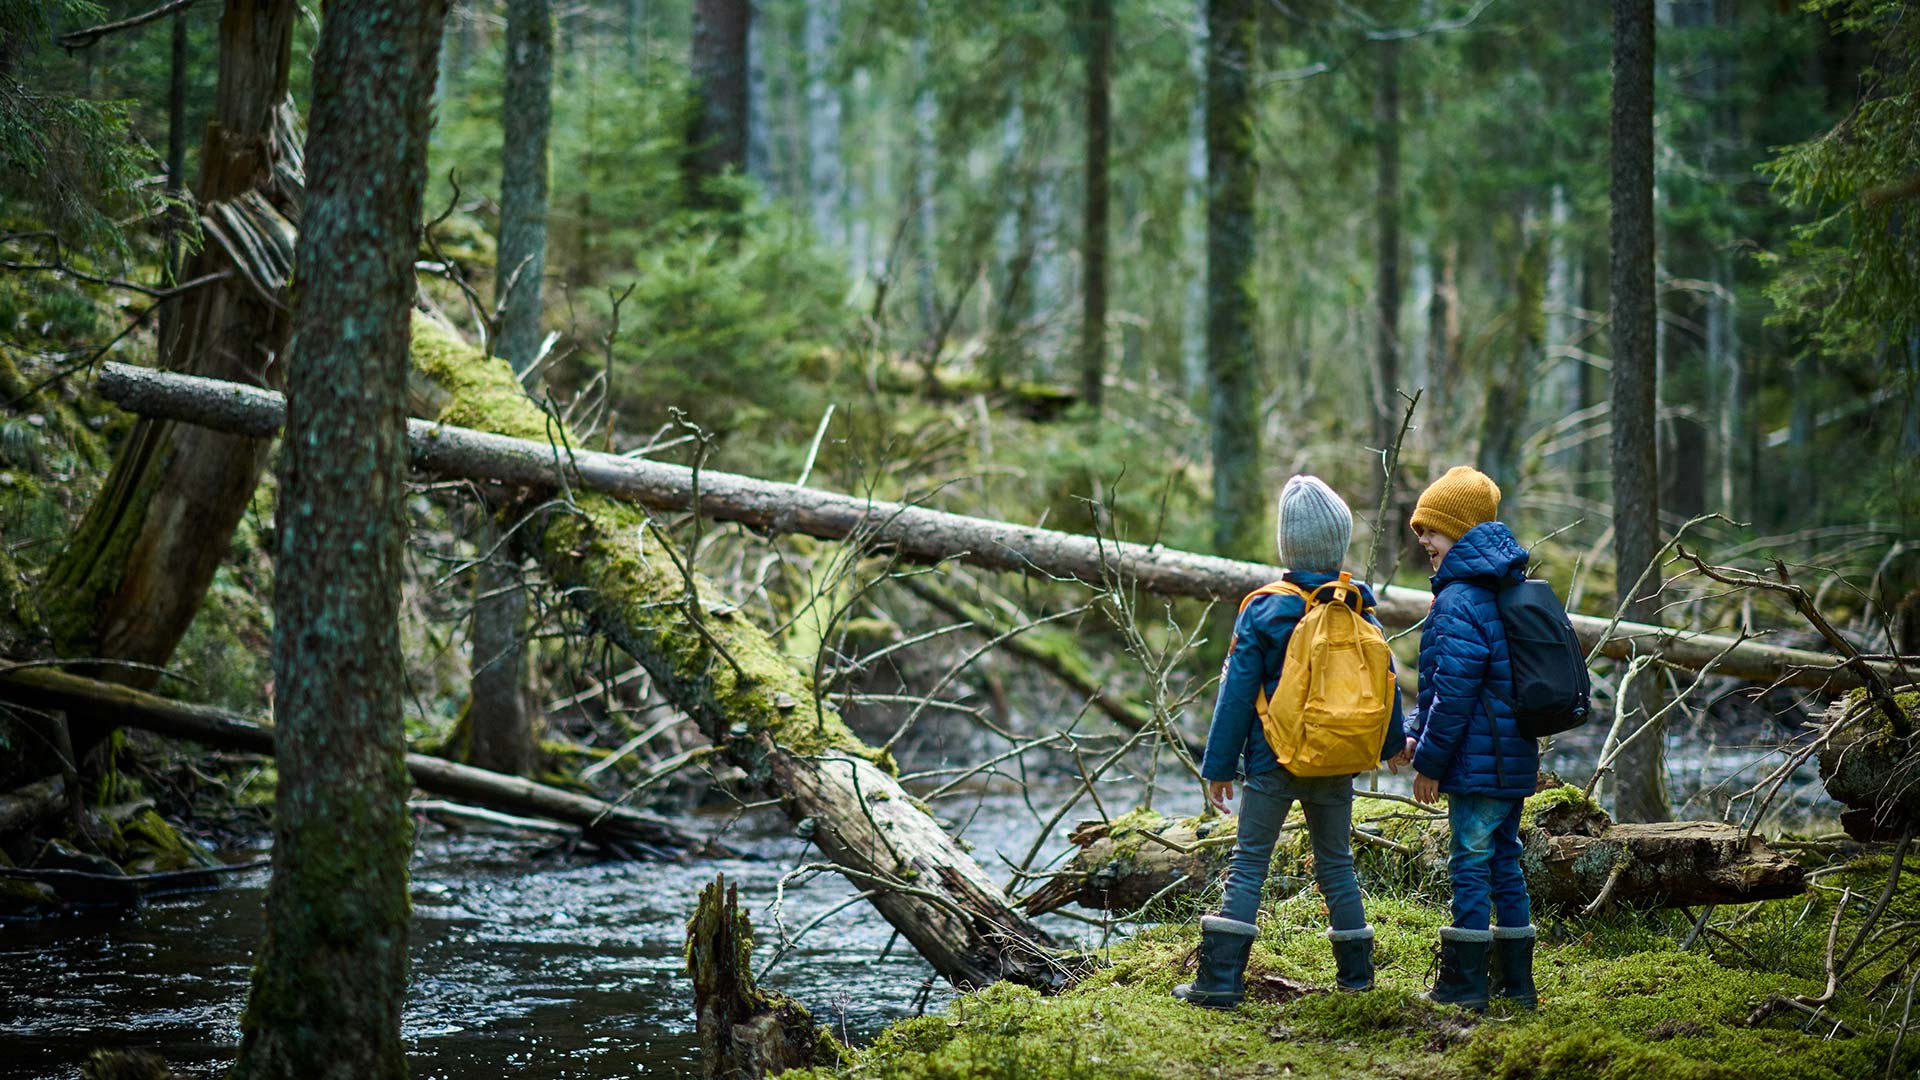 Pojkar på äventyr i skog med fallna träd och bäck. Risvedens naturreservat, Västergötland